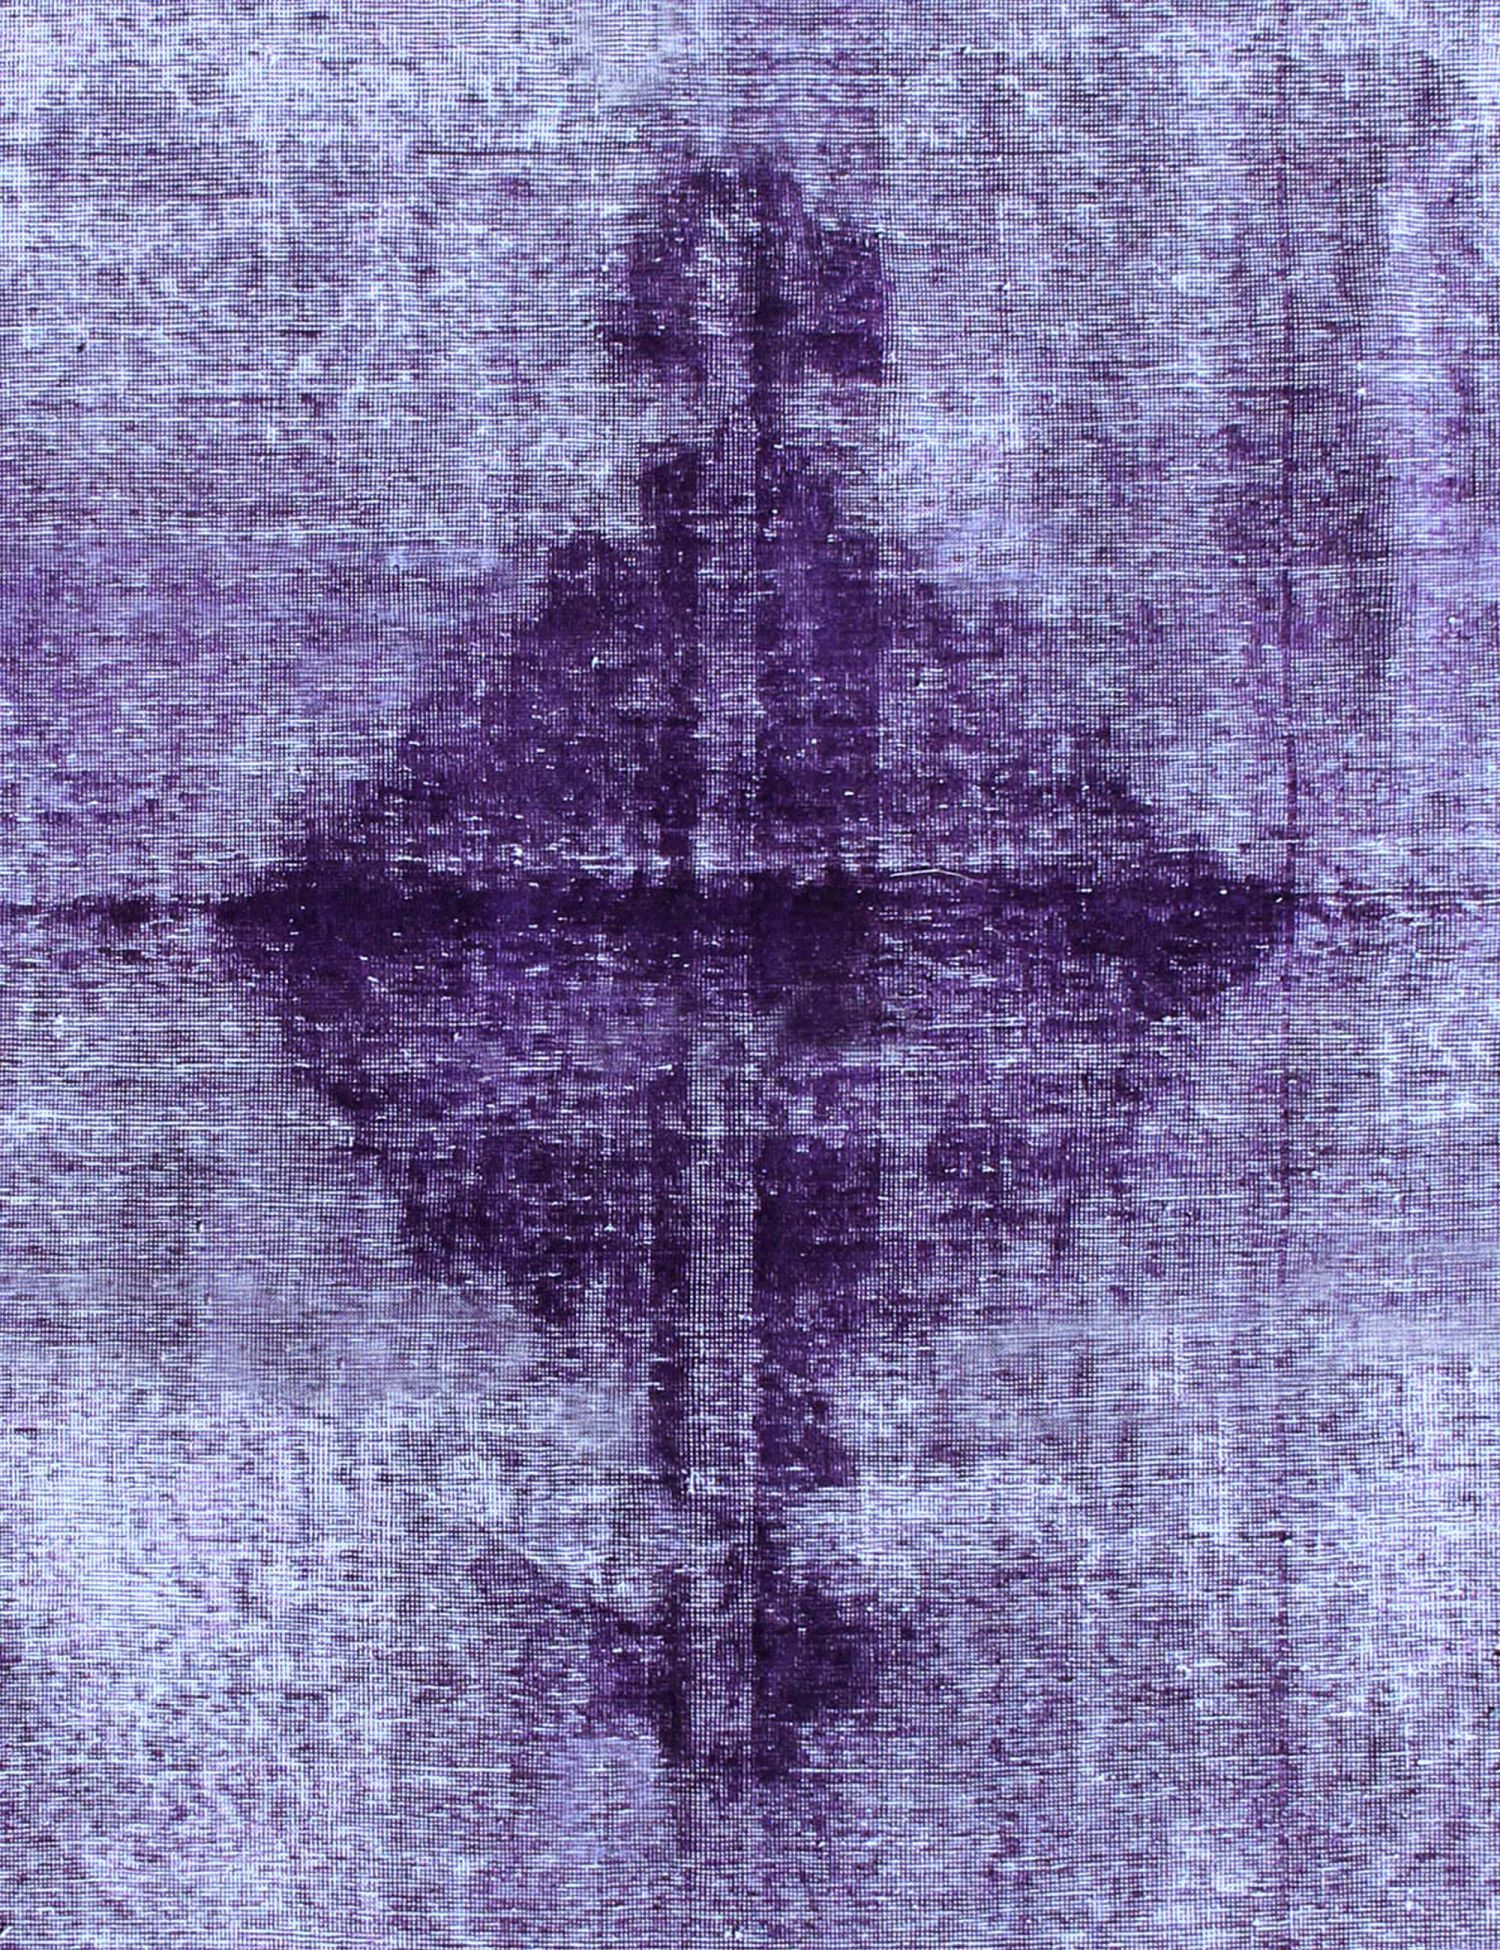 Persischer Vintage Teppich  lila <br/>325 x 235 cm